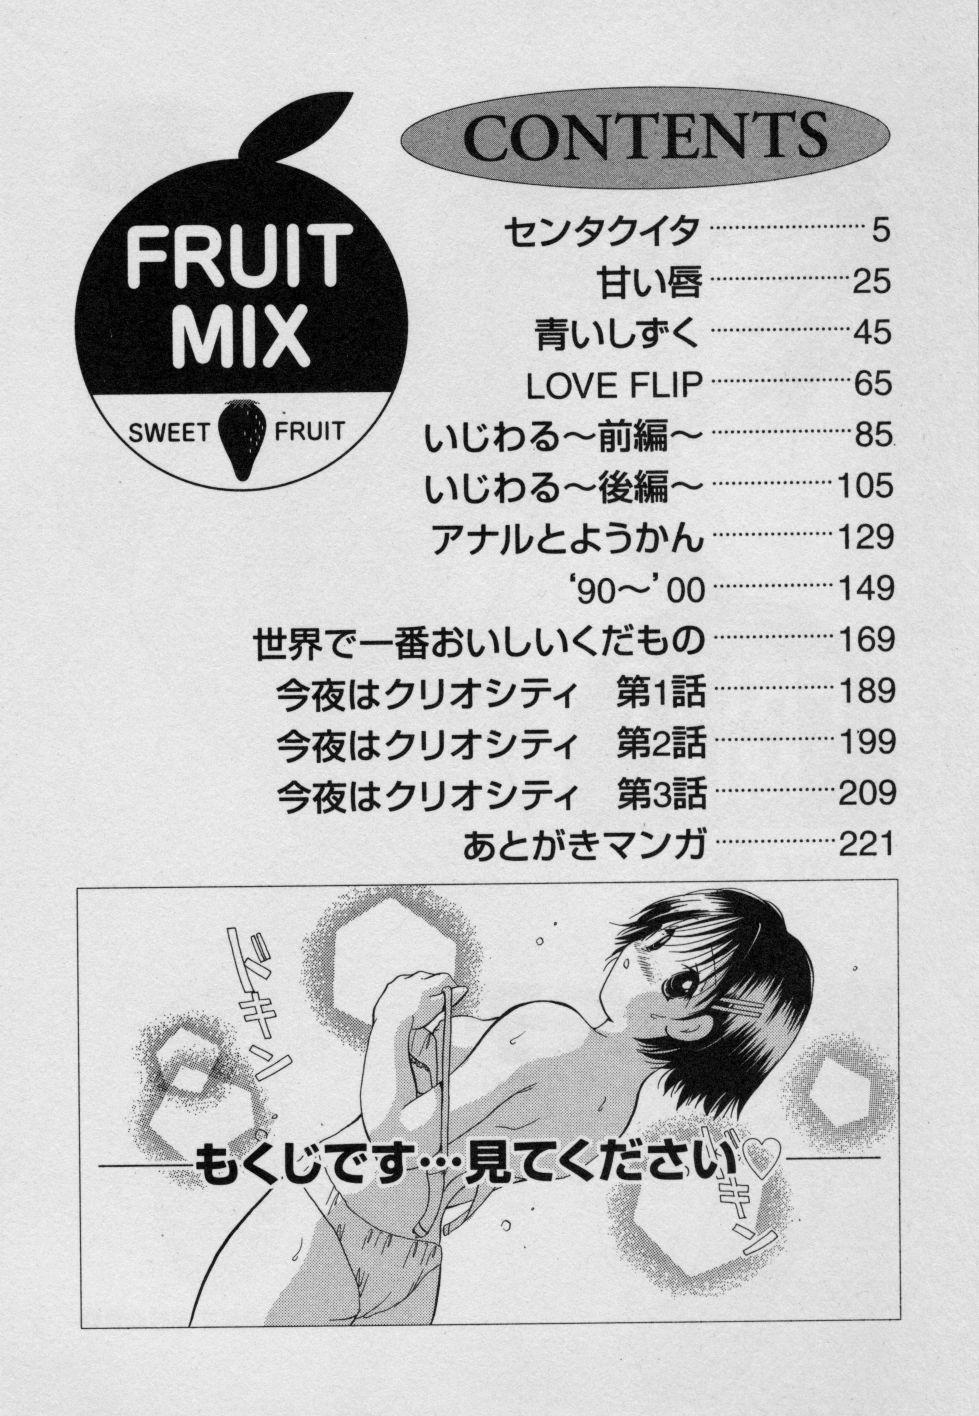 Fruit Mix - Fresh and Sweet 8